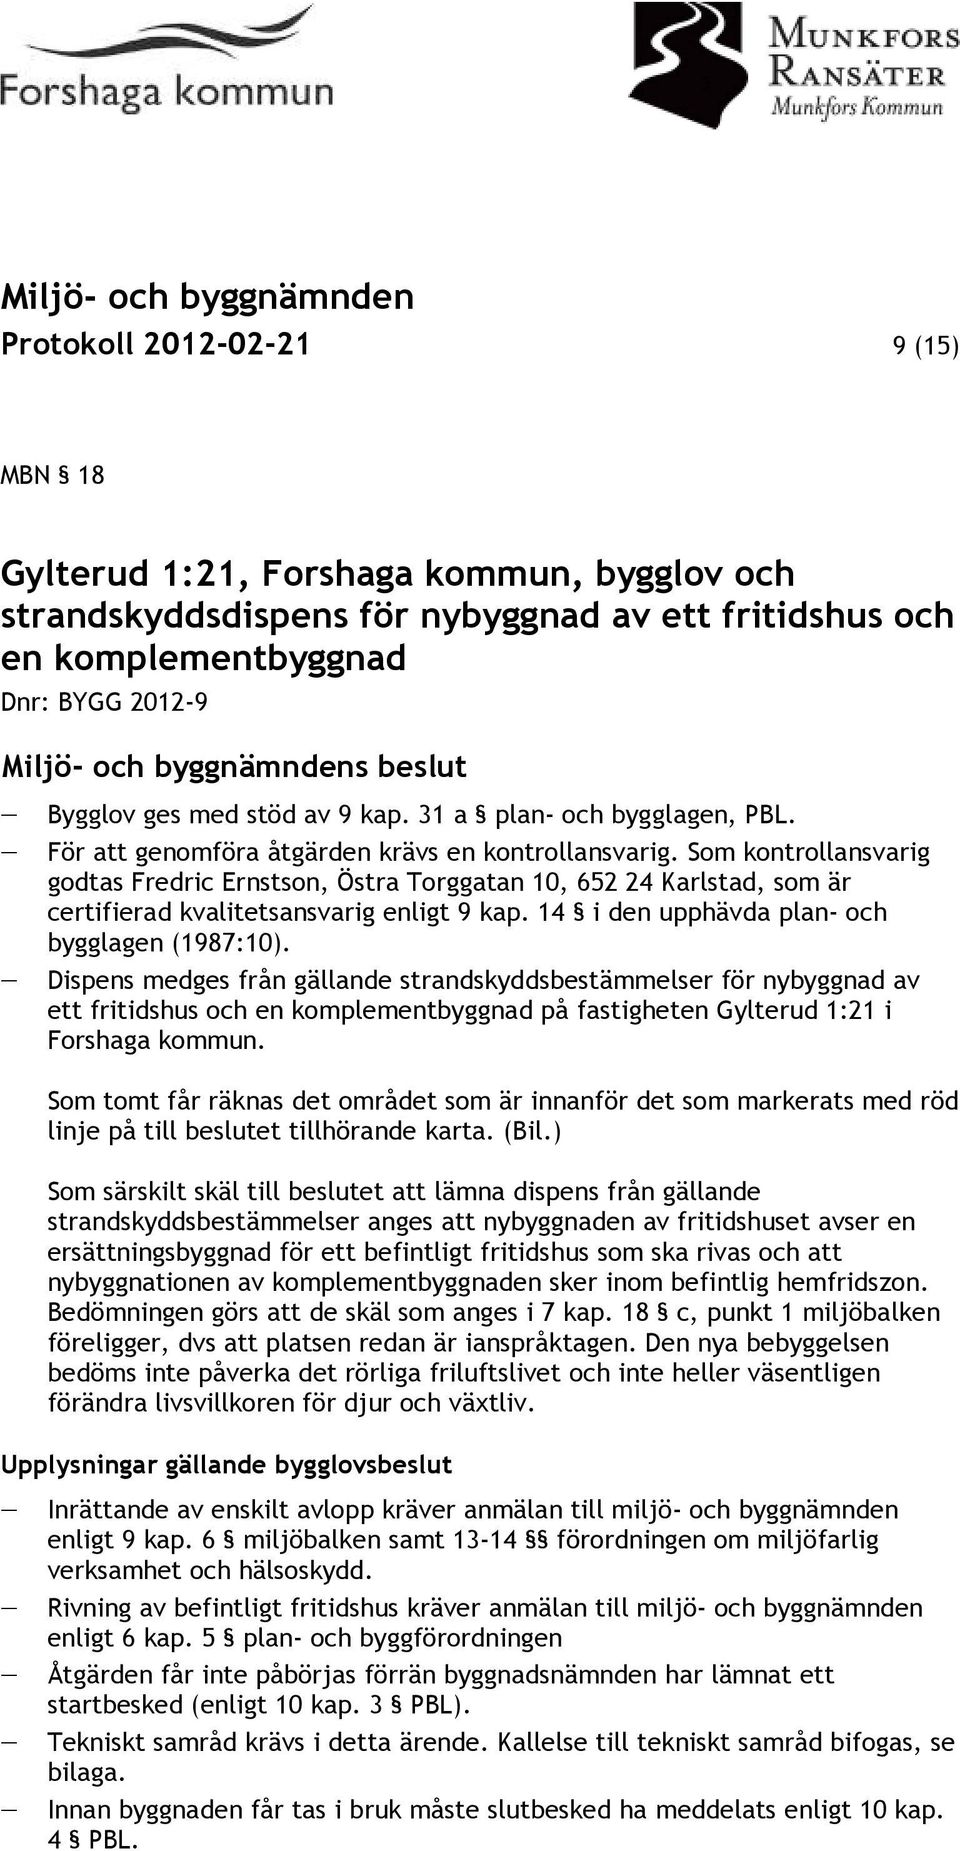 Som kontrollansvarig godtas Fredric Ernstson, Östra Torggatan 10, 652 24 Karlstad, som är certifierad kvalitetsansvarig enligt 9 kap. 14 i den upphävda plan- och bygglagen (1987:10).